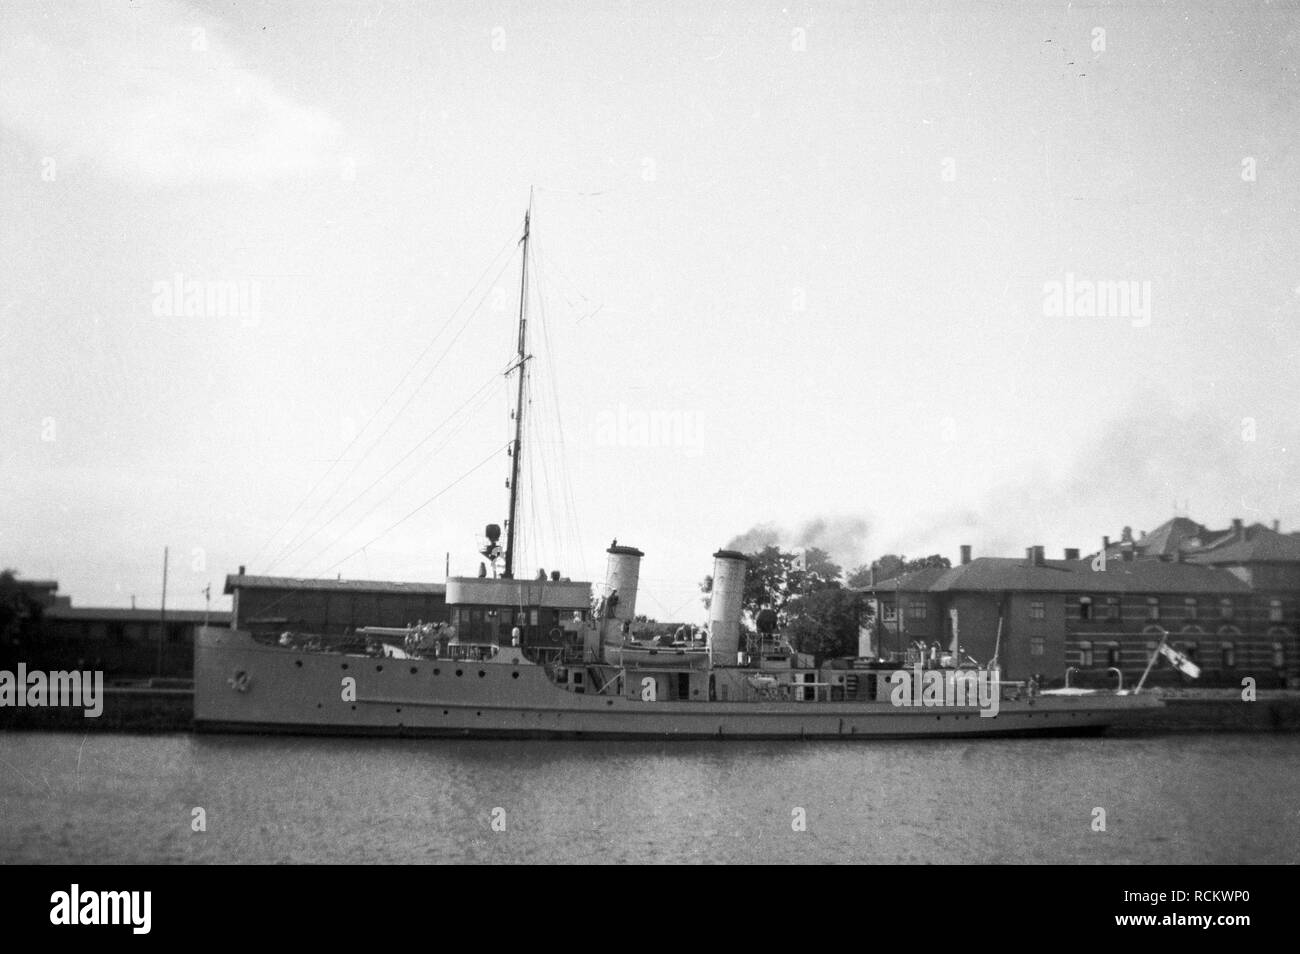 Deutsches Reich Reichsmarine Artillerieschulschiff DRACHE /  German Reich Imperial Navy Artillery Training Ship DRACHE Stock Photo